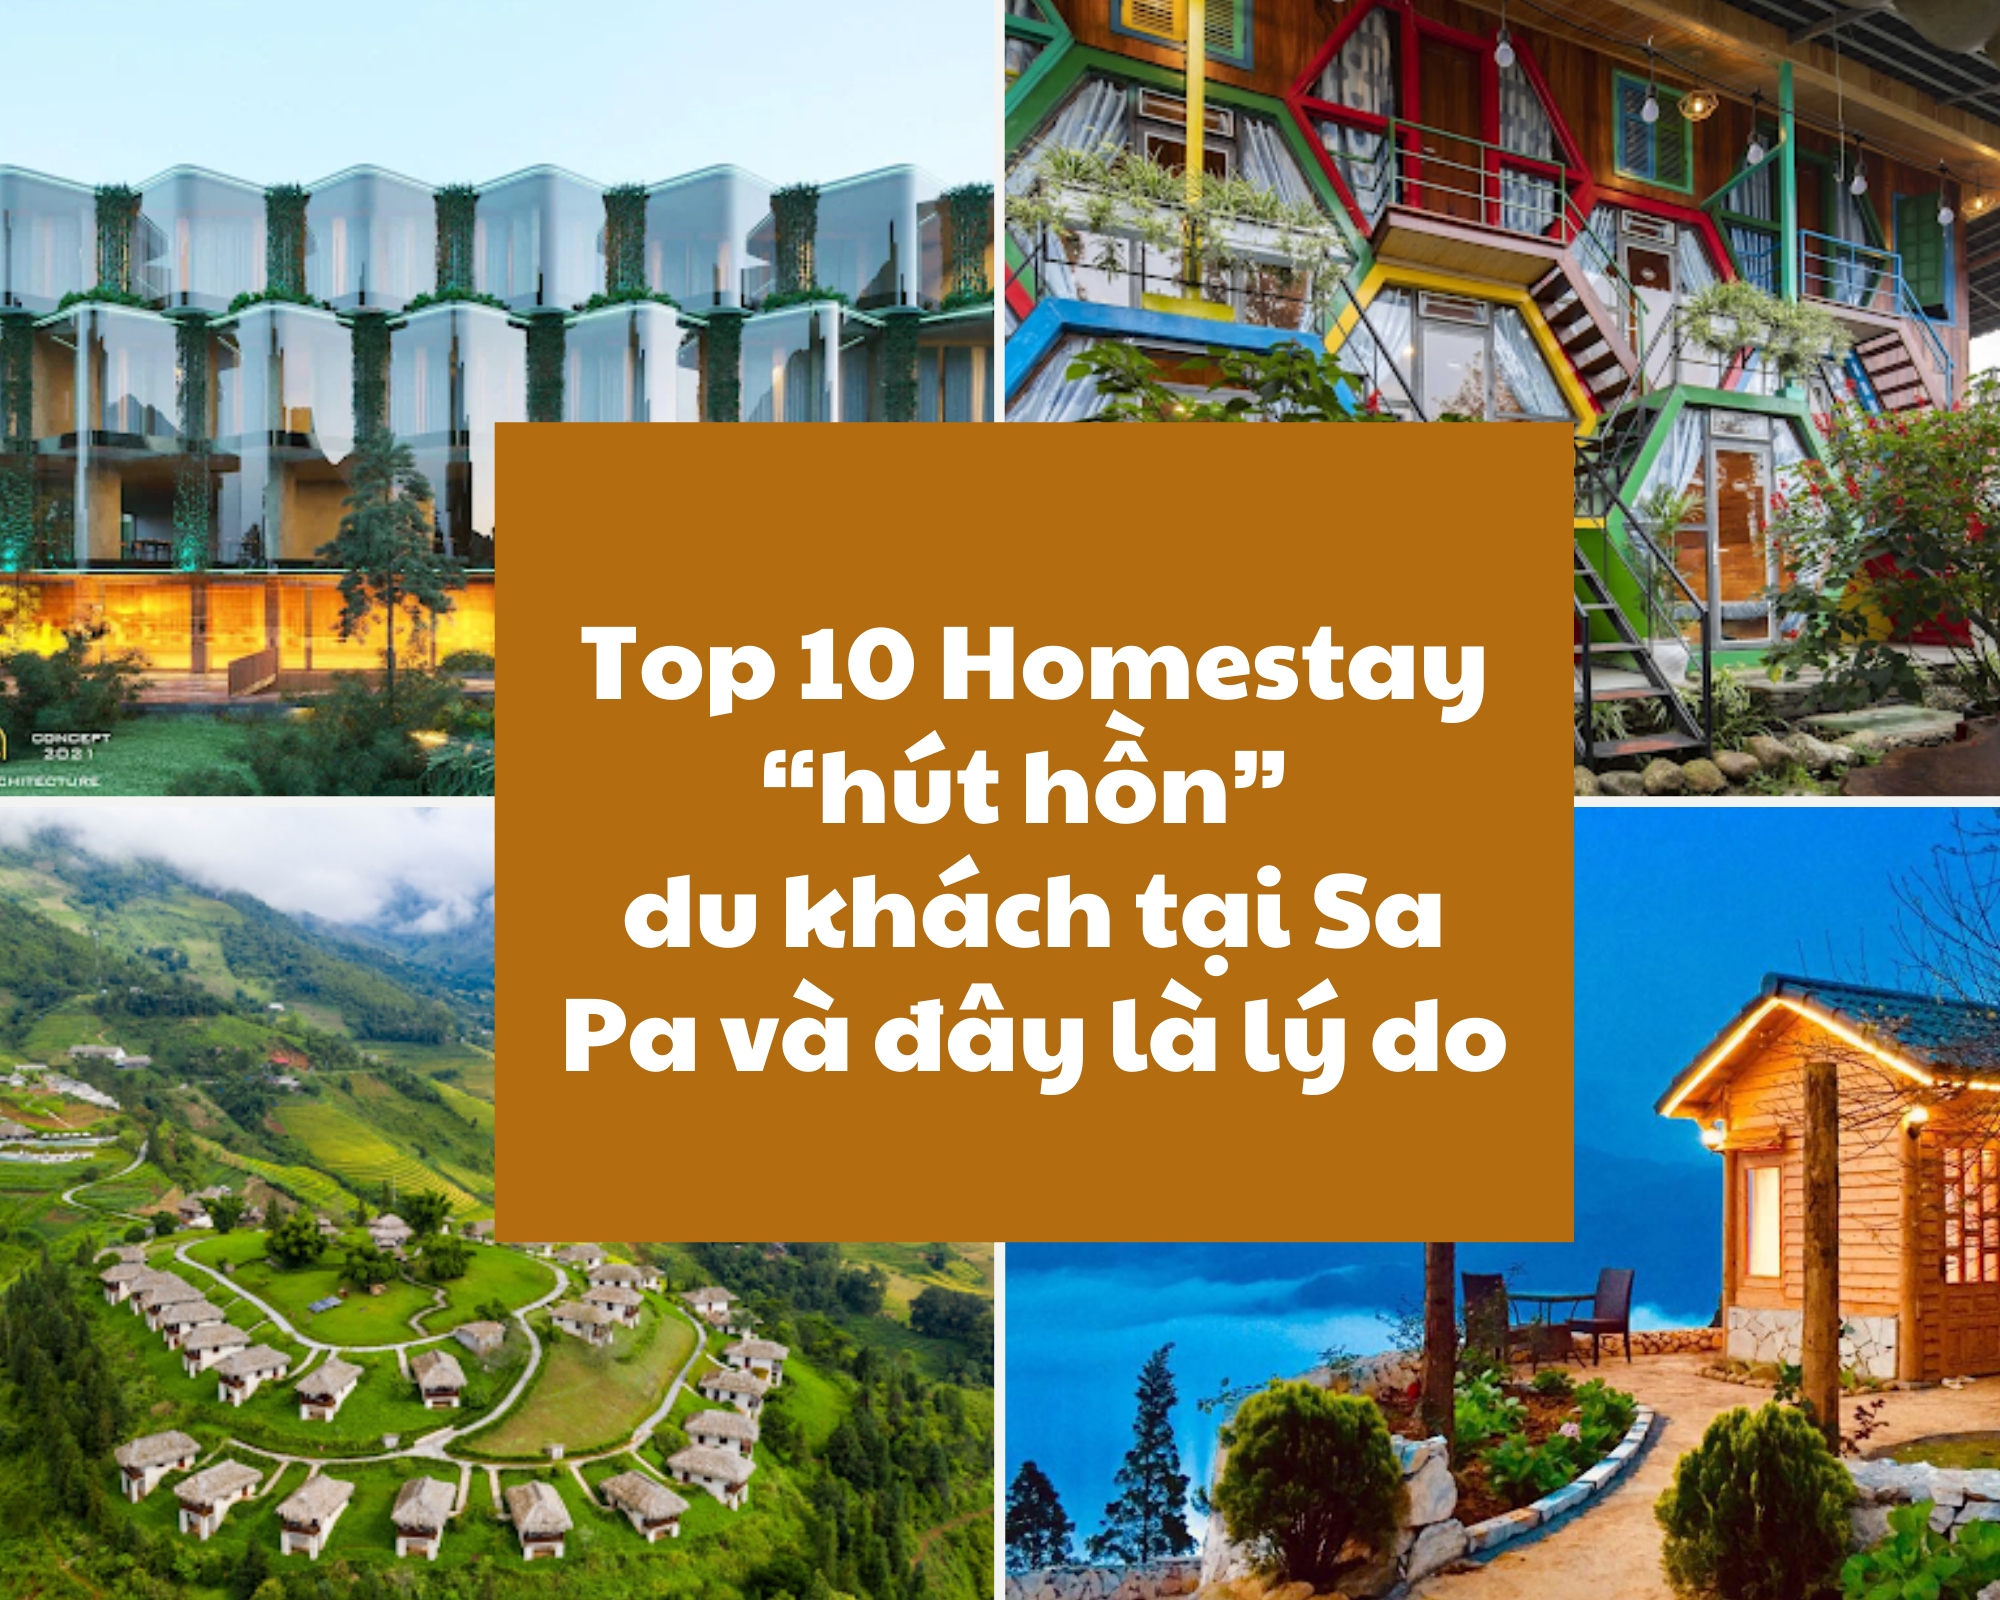 Top 10 Homestay “hút hồn” du khách tại Sa Pa và đây là lý do (Phần 1)